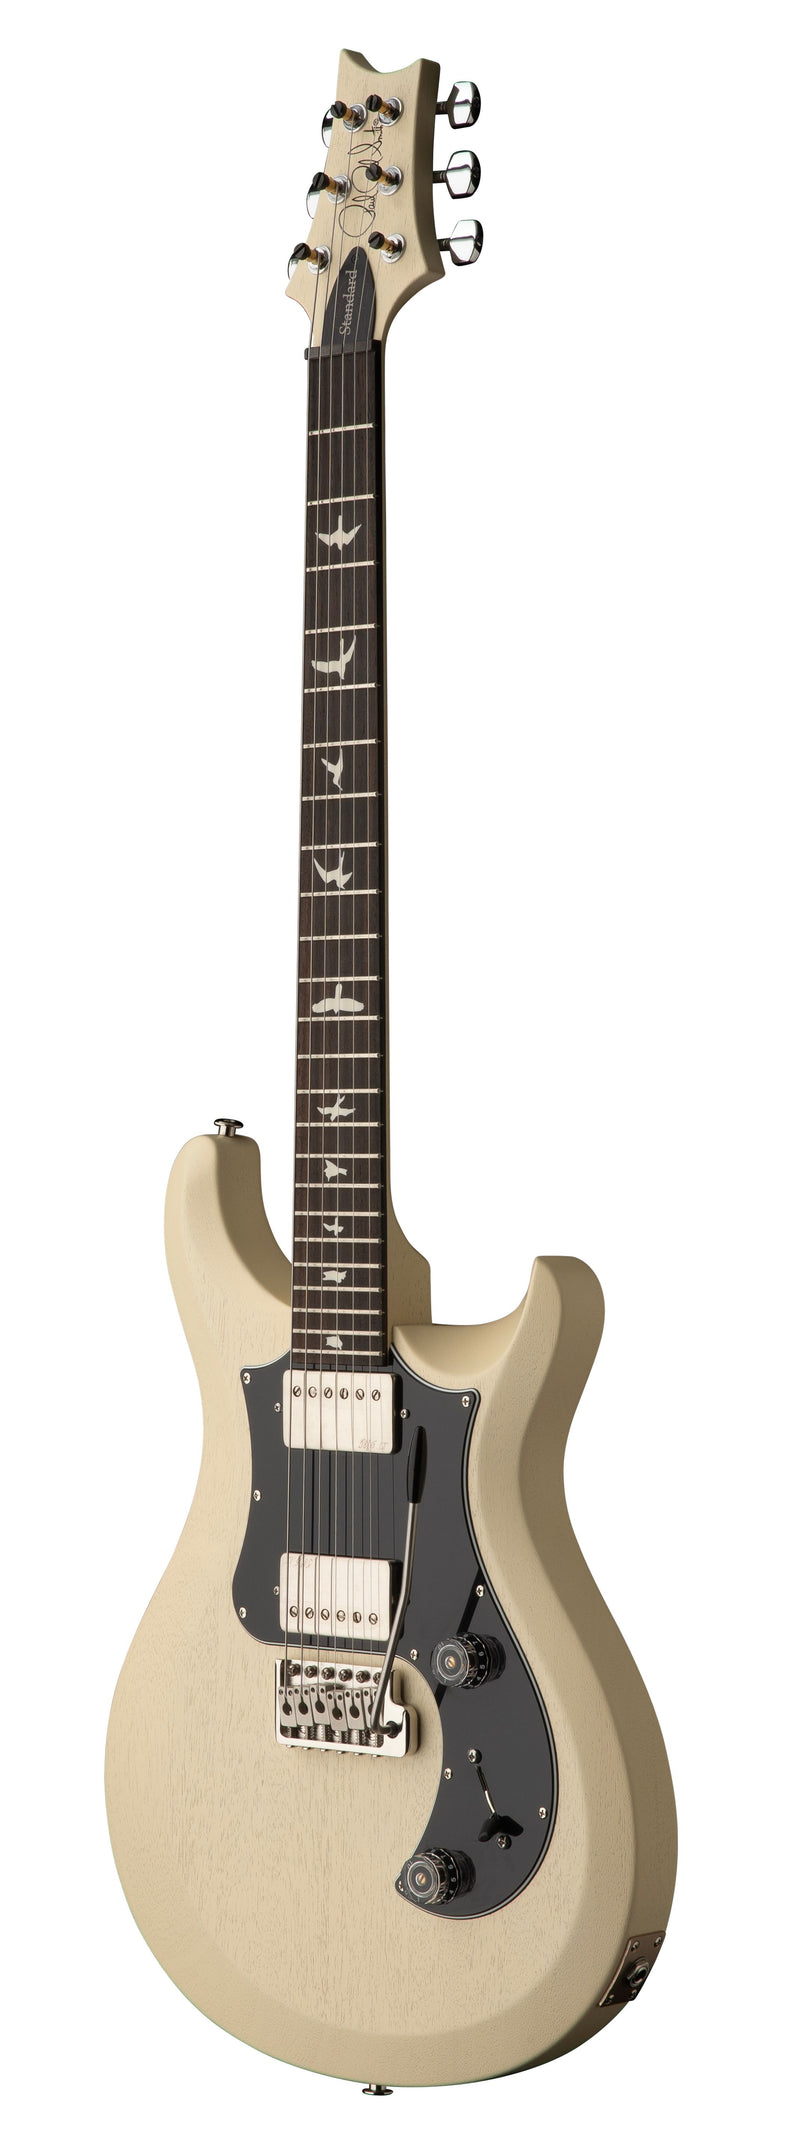 PRS S2 STANDARD 24 SATIN Guitare électrique (Blanc antique)